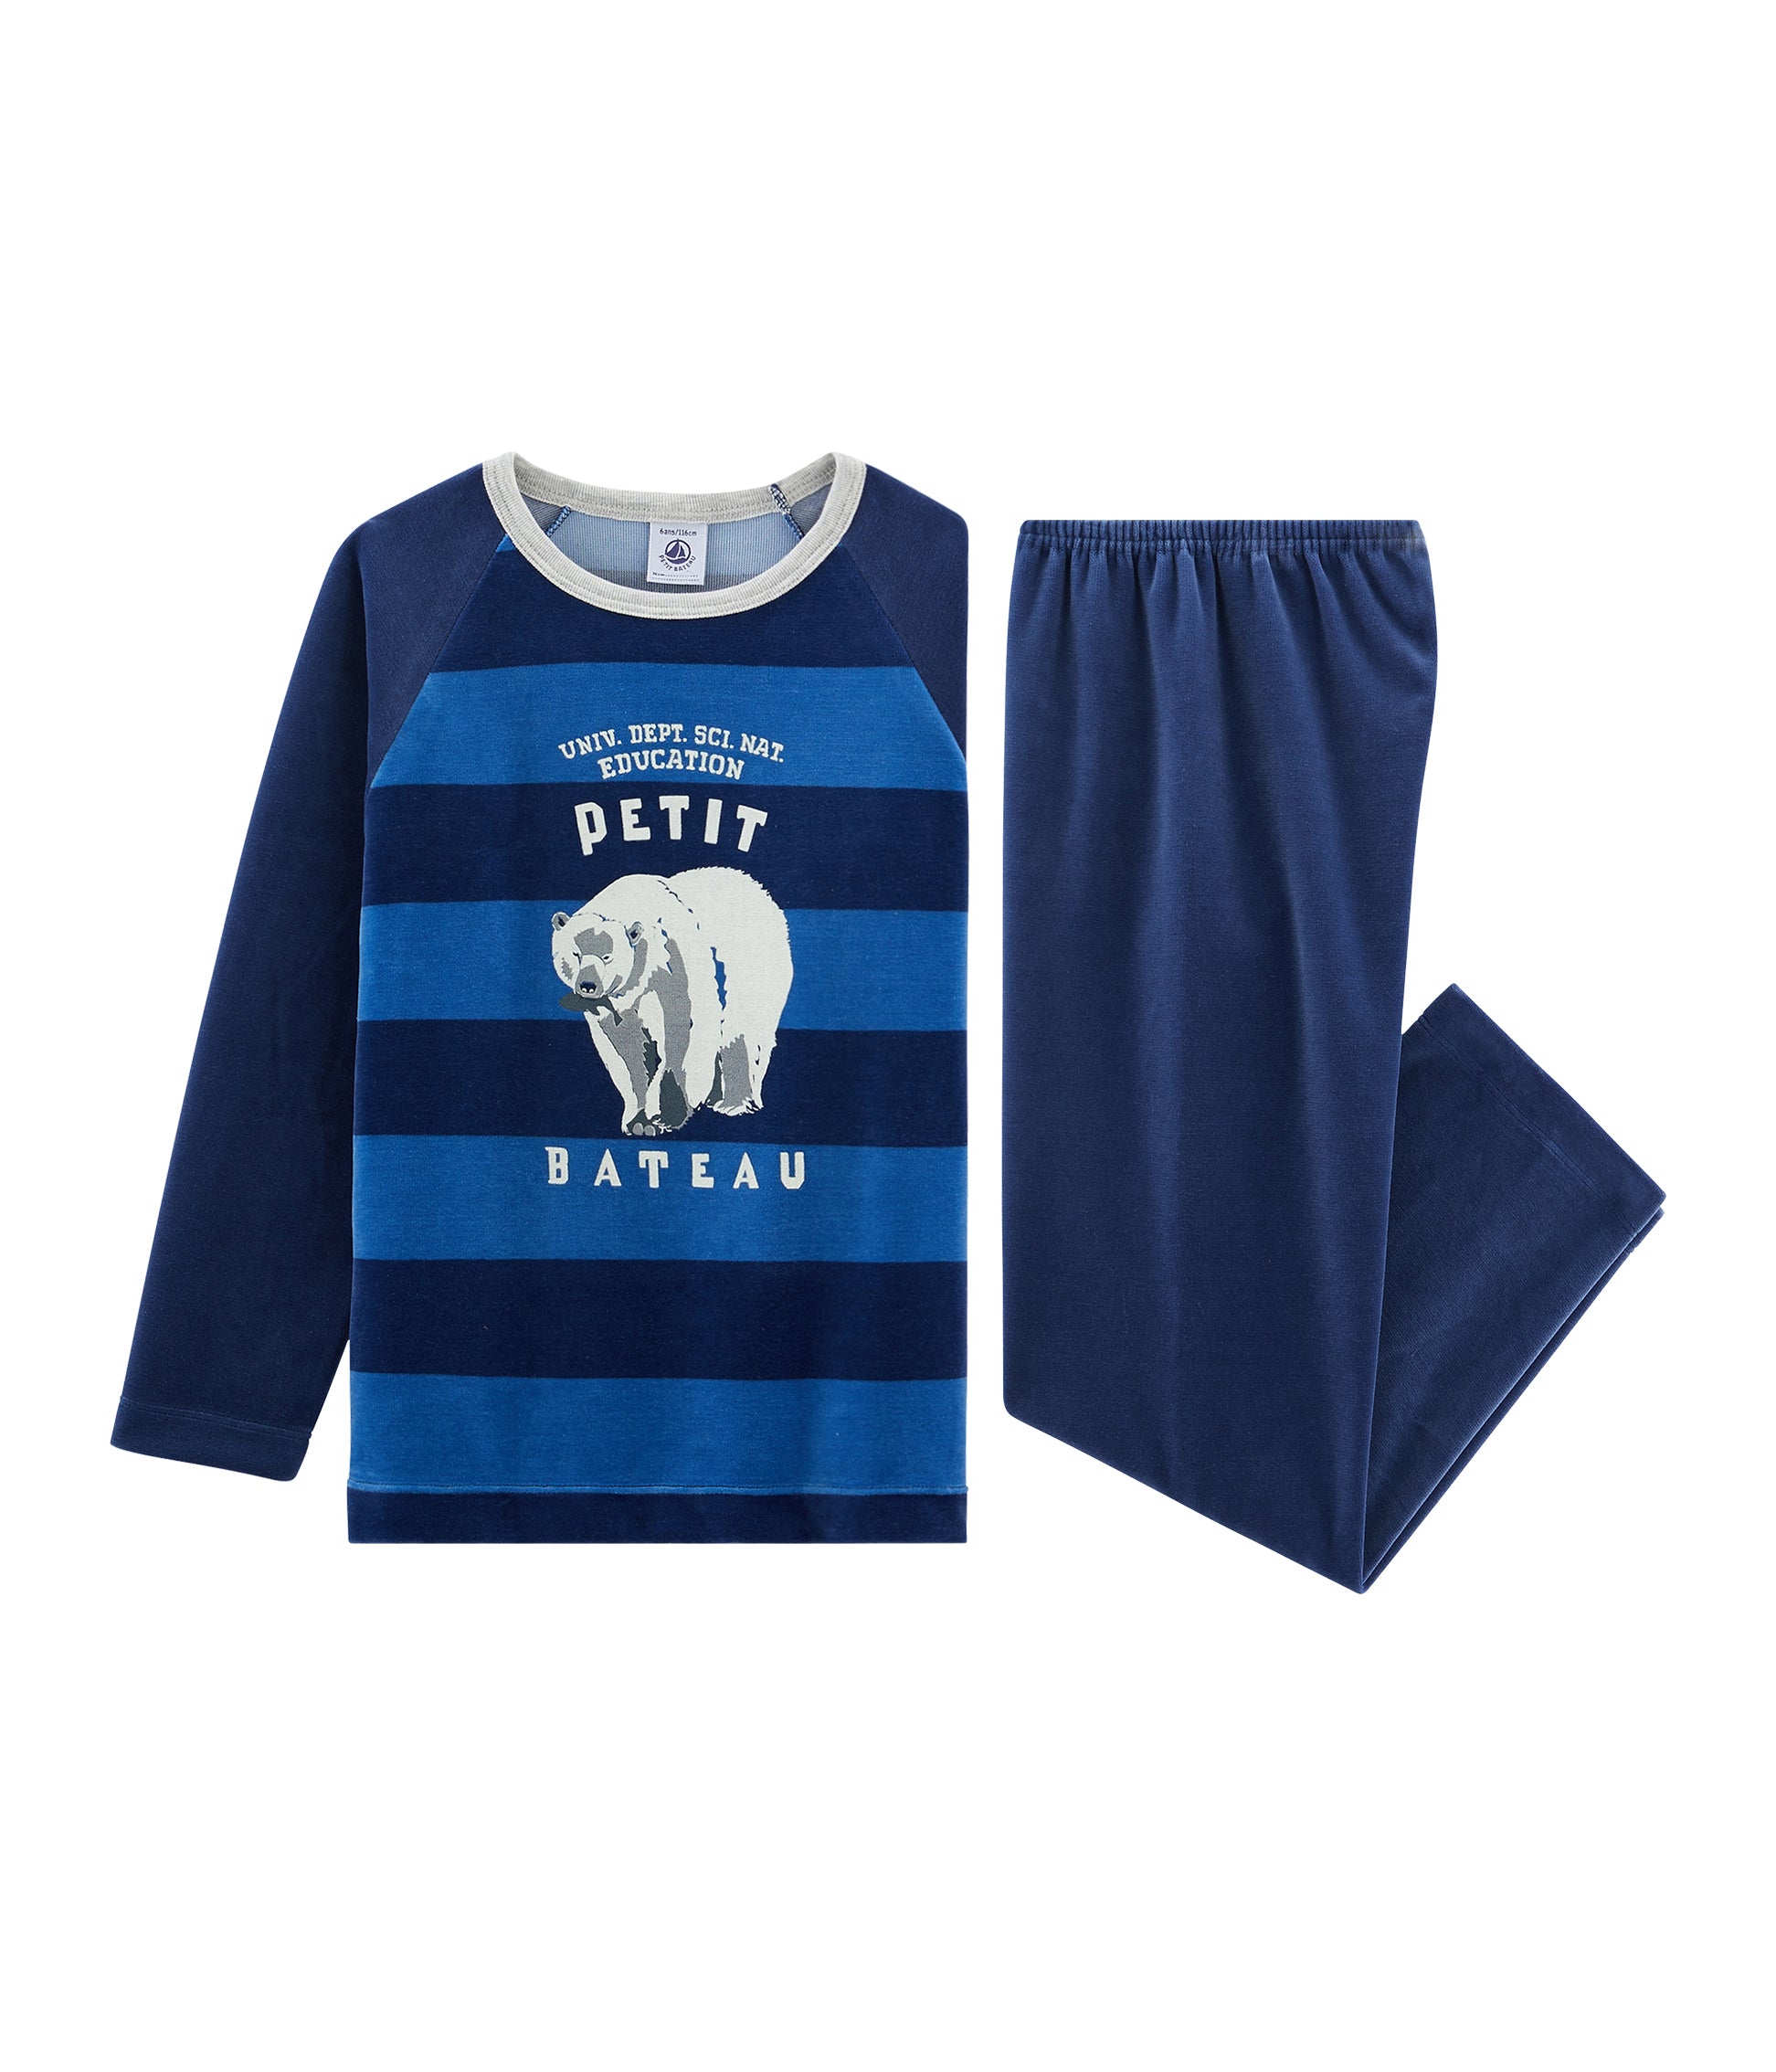 Boys Blue Printed Cotton Nightwear